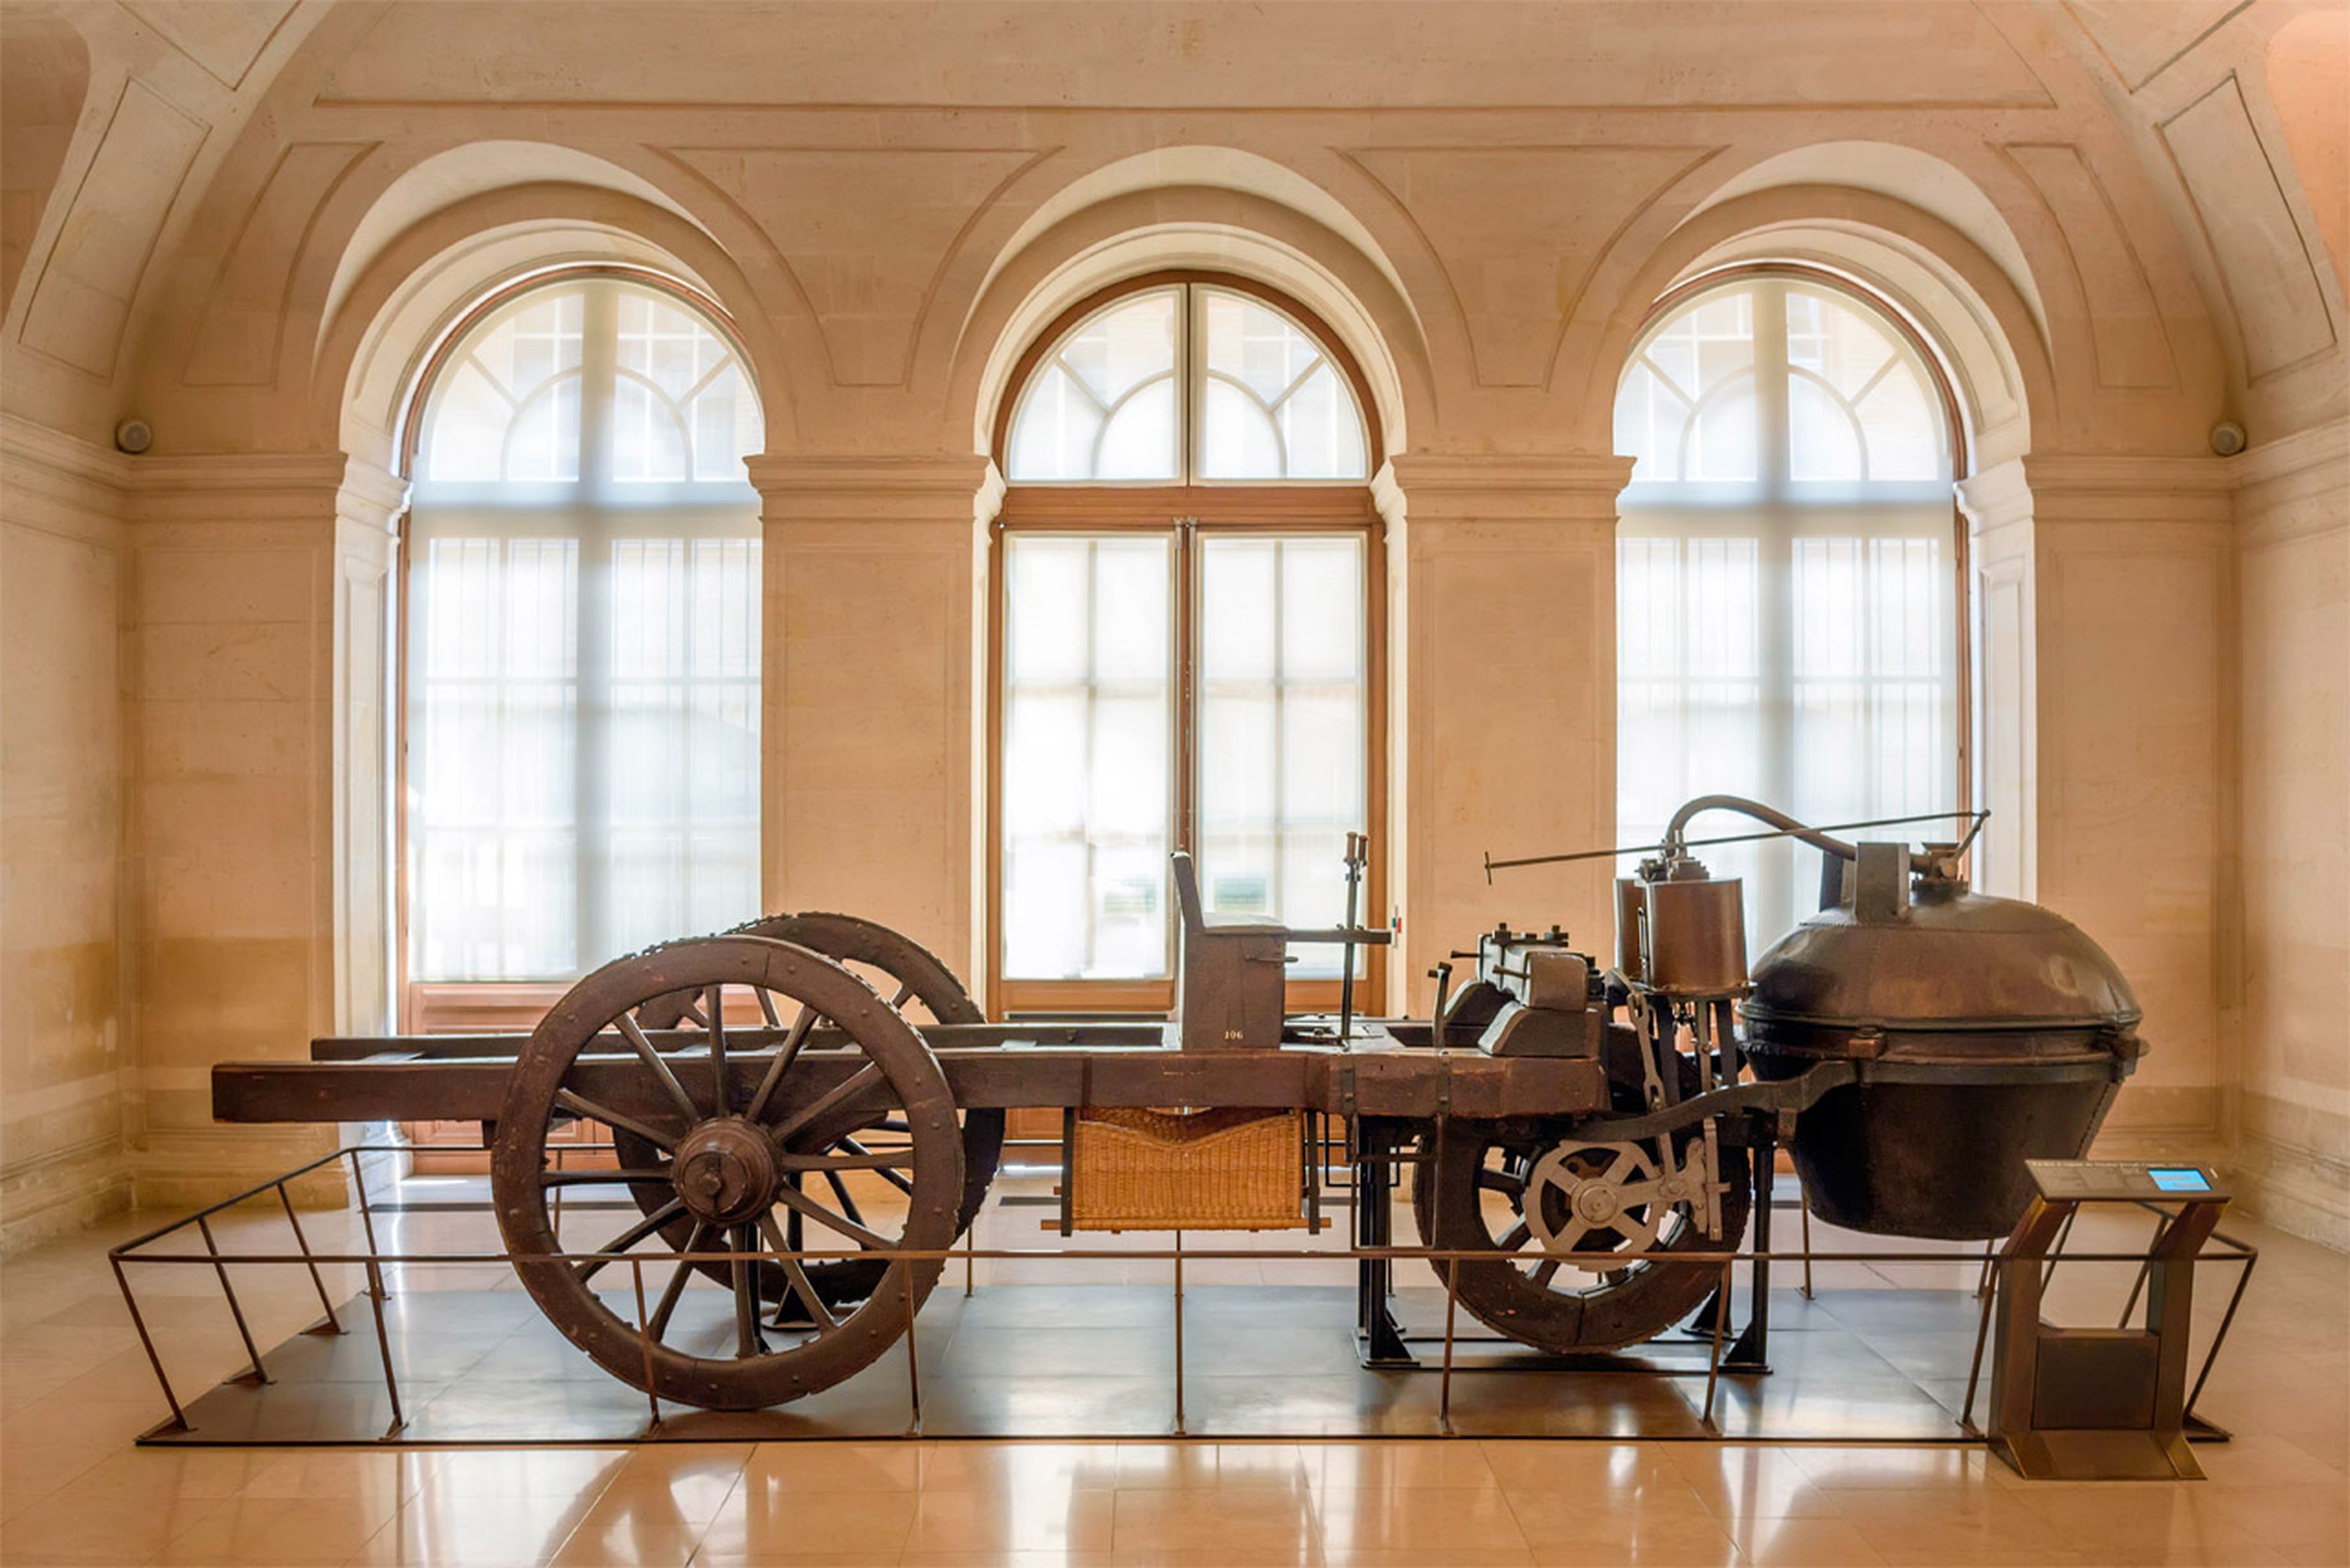 El vehículo de vapor creado por Nicolas-Joseph Cugnot, en el Museo de las Artes y Oficios de París.